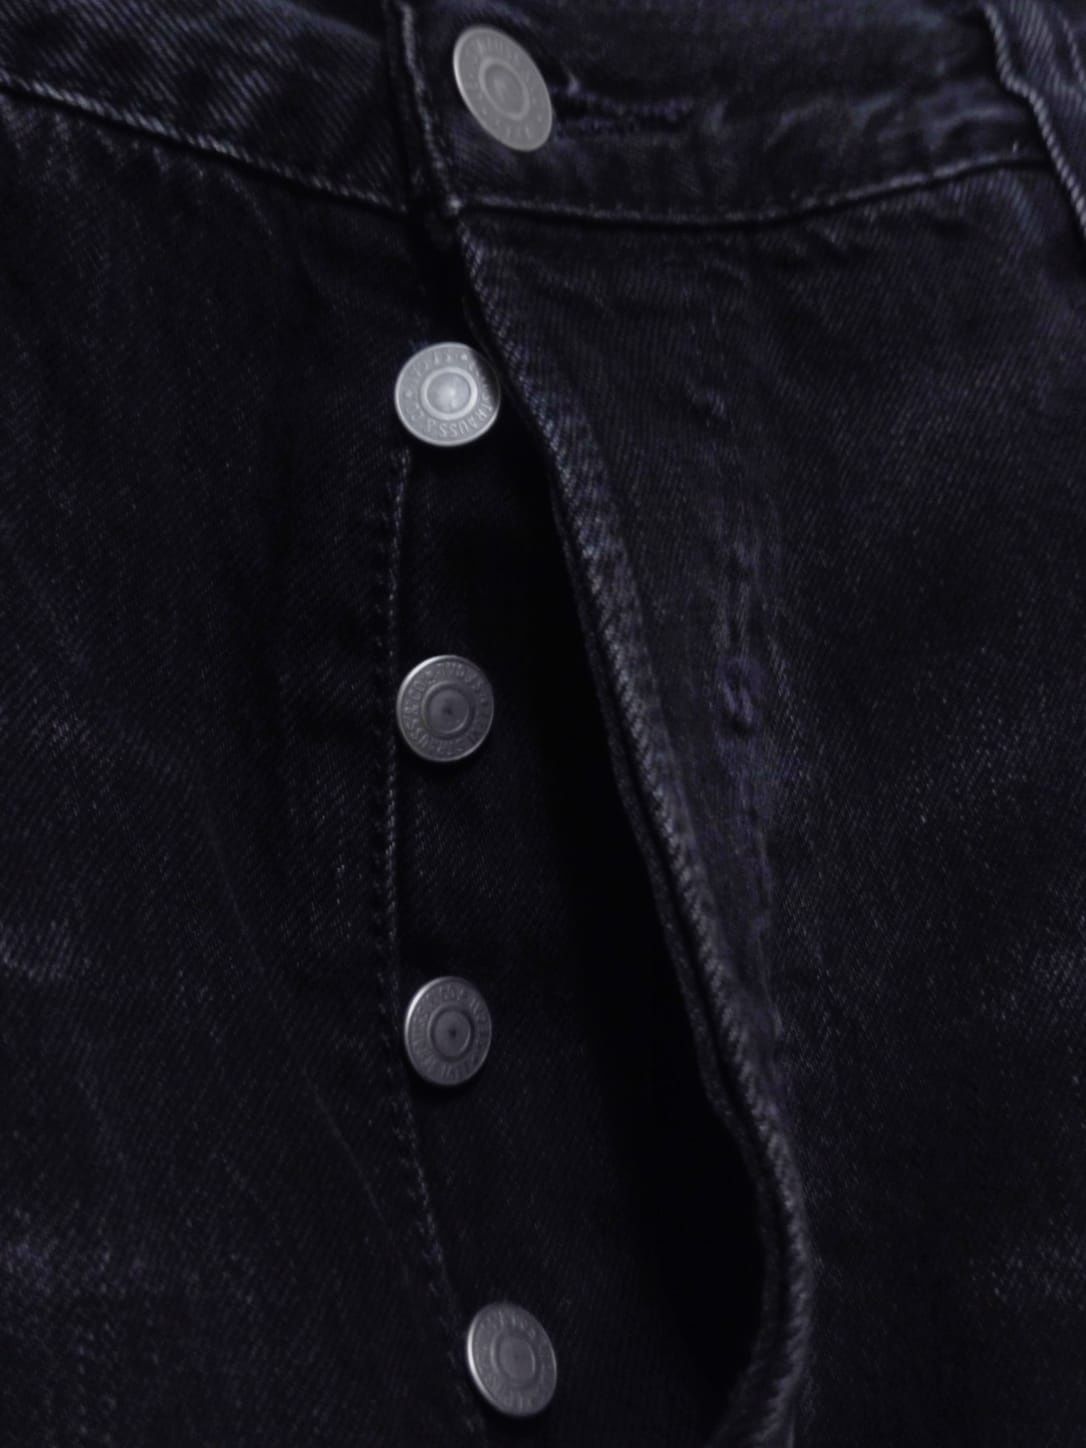 Spodnie jeansowe jeansy Levi's Strauss czarne ciemne 501 w 38 l 34 bla